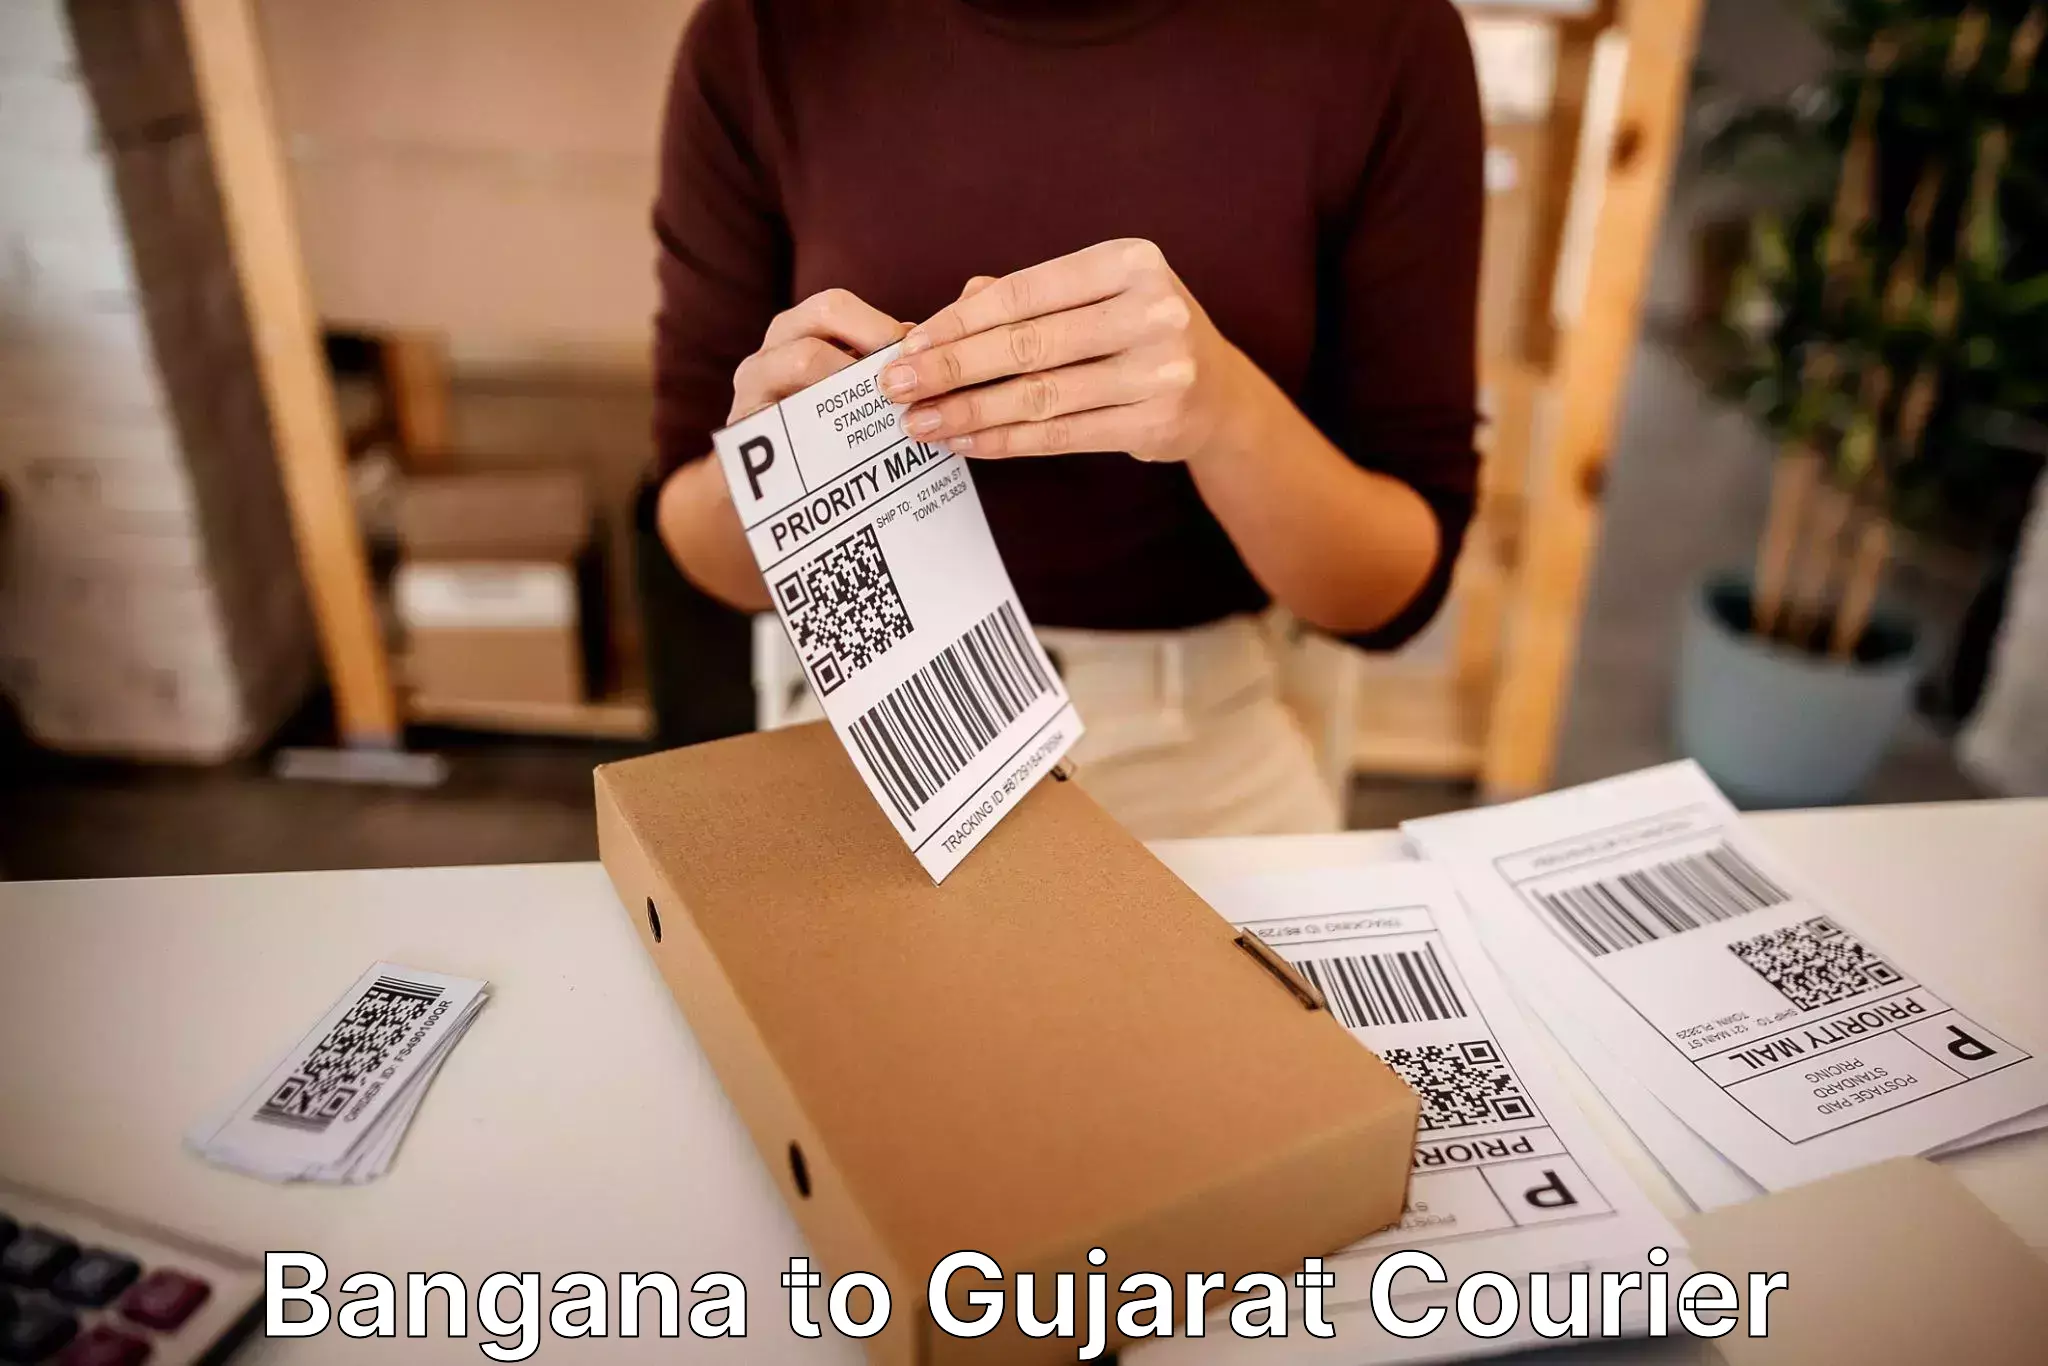 Budget-friendly movers Bangana to Gujarat